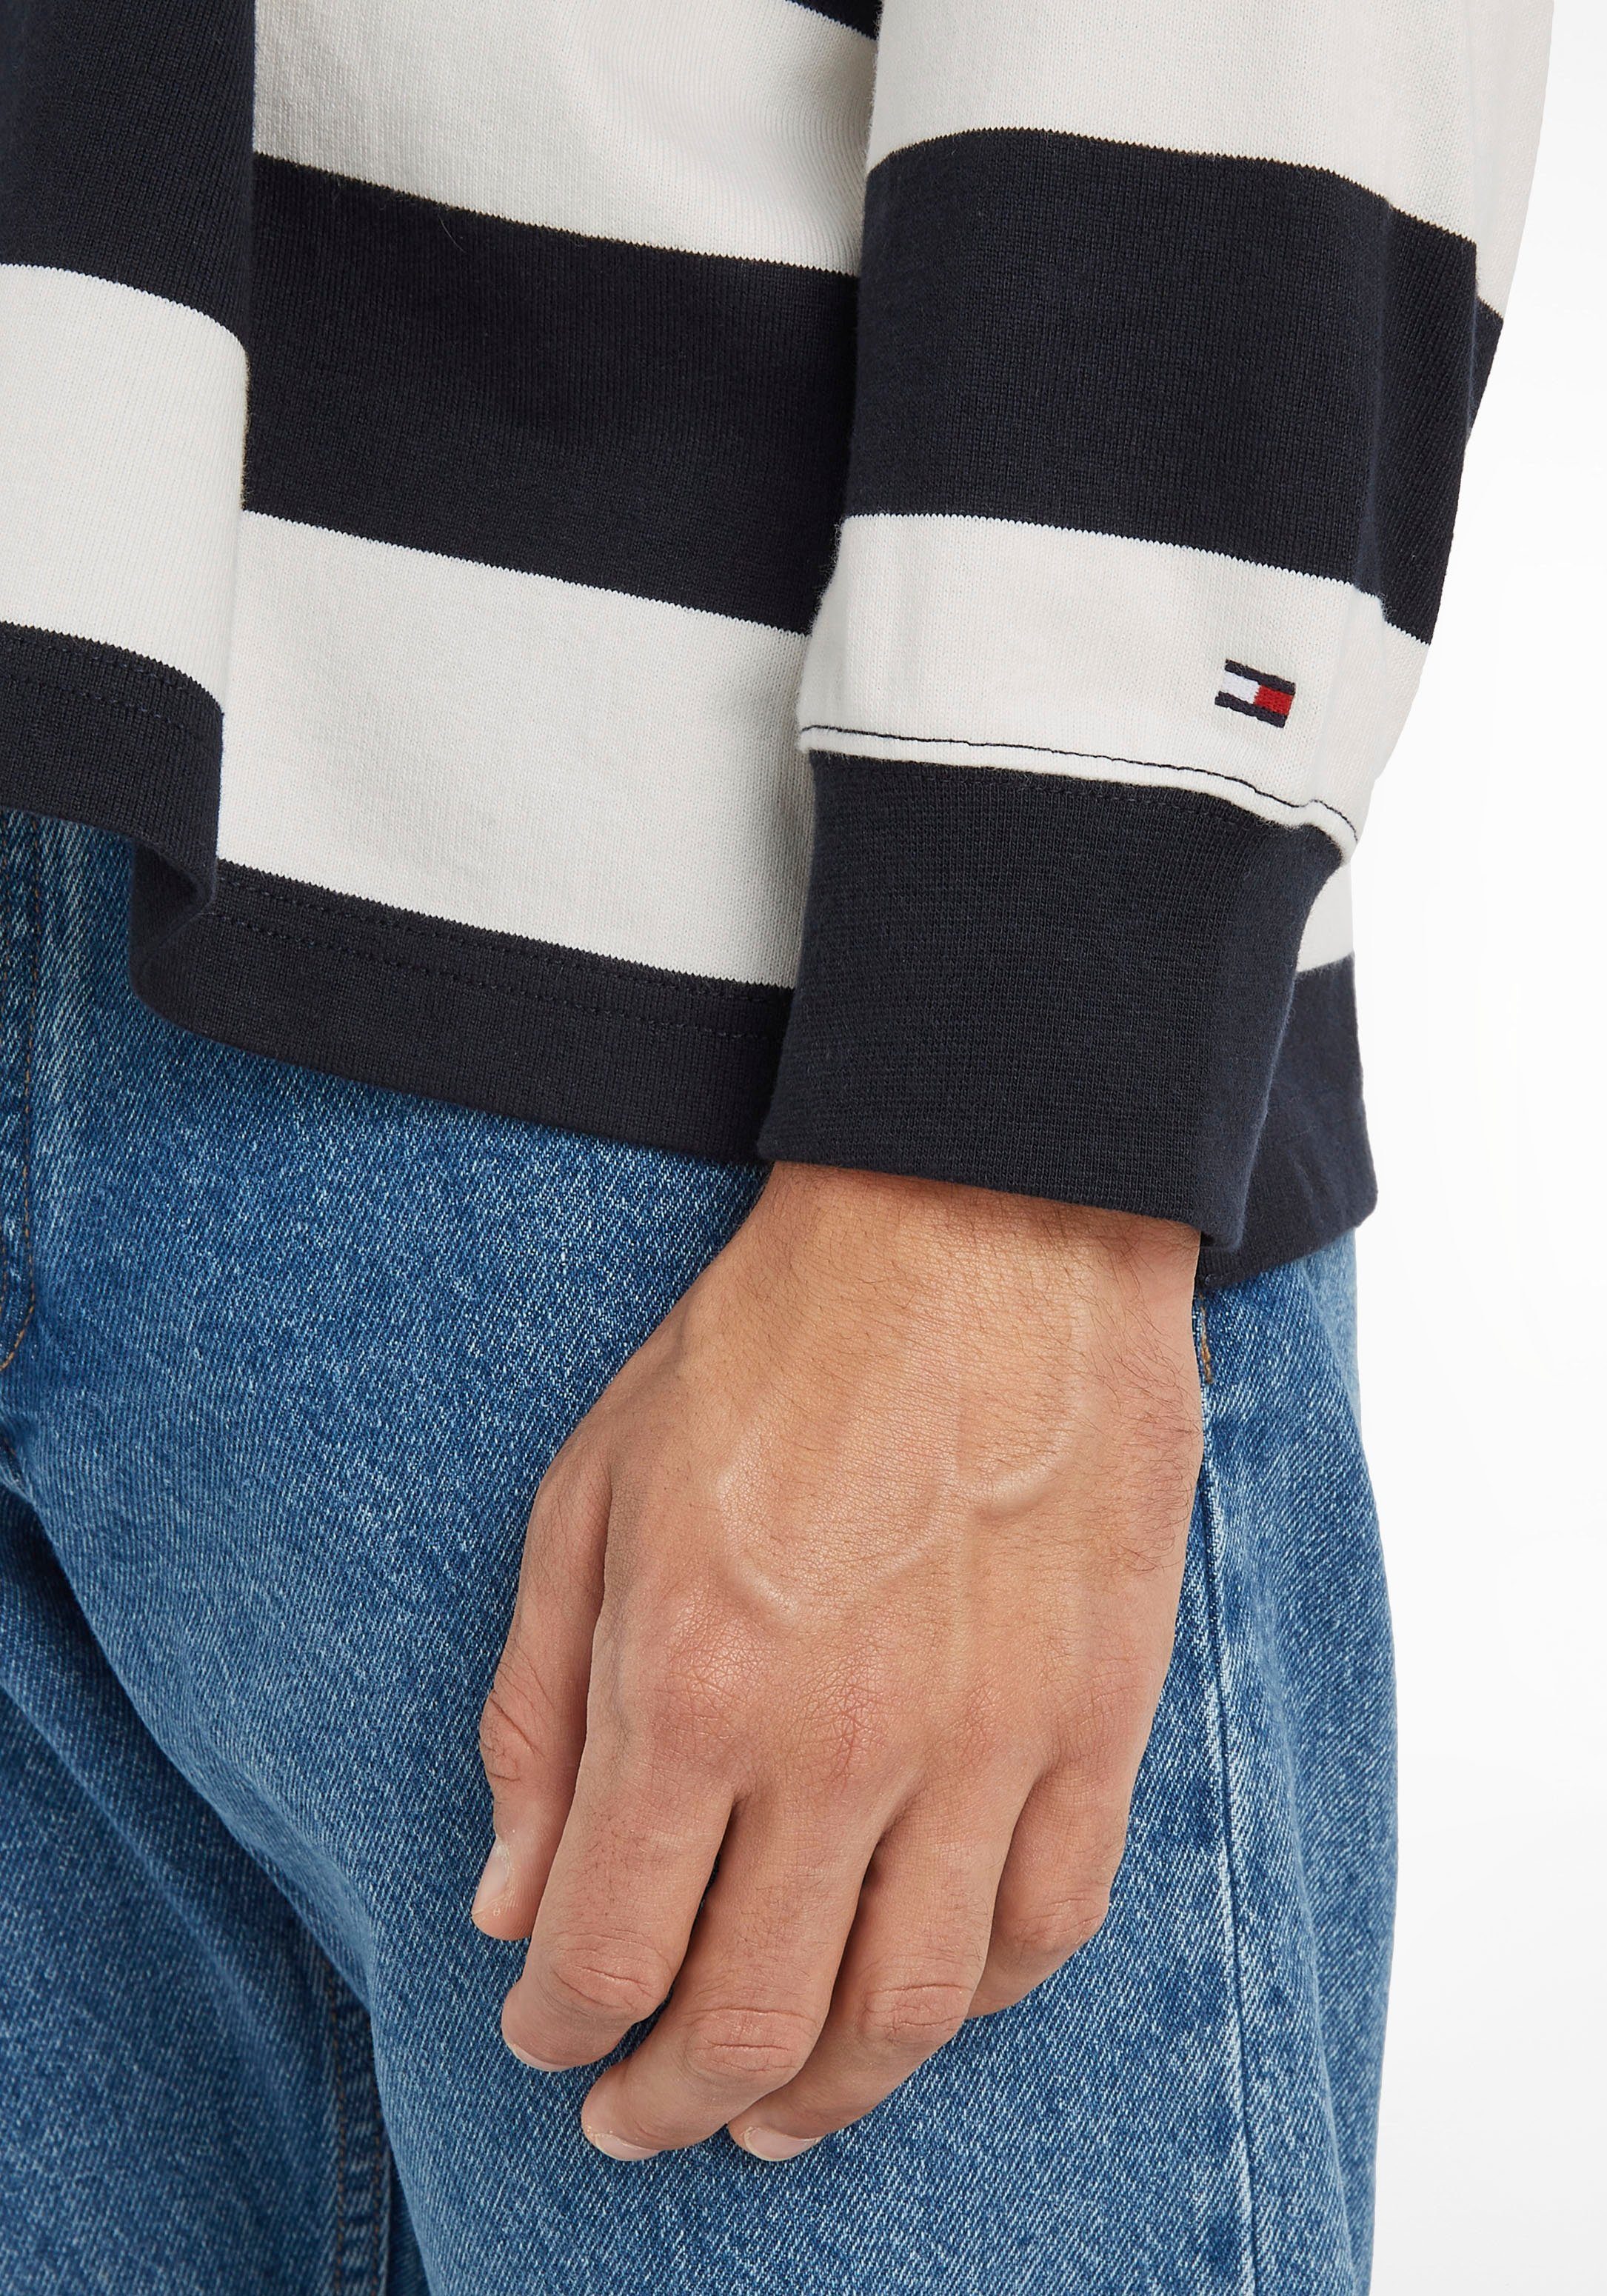 Sky RUGBY BLOCK STRIPED Ecru/Desert im Streifendesign Hilfiger Sweater Tommy